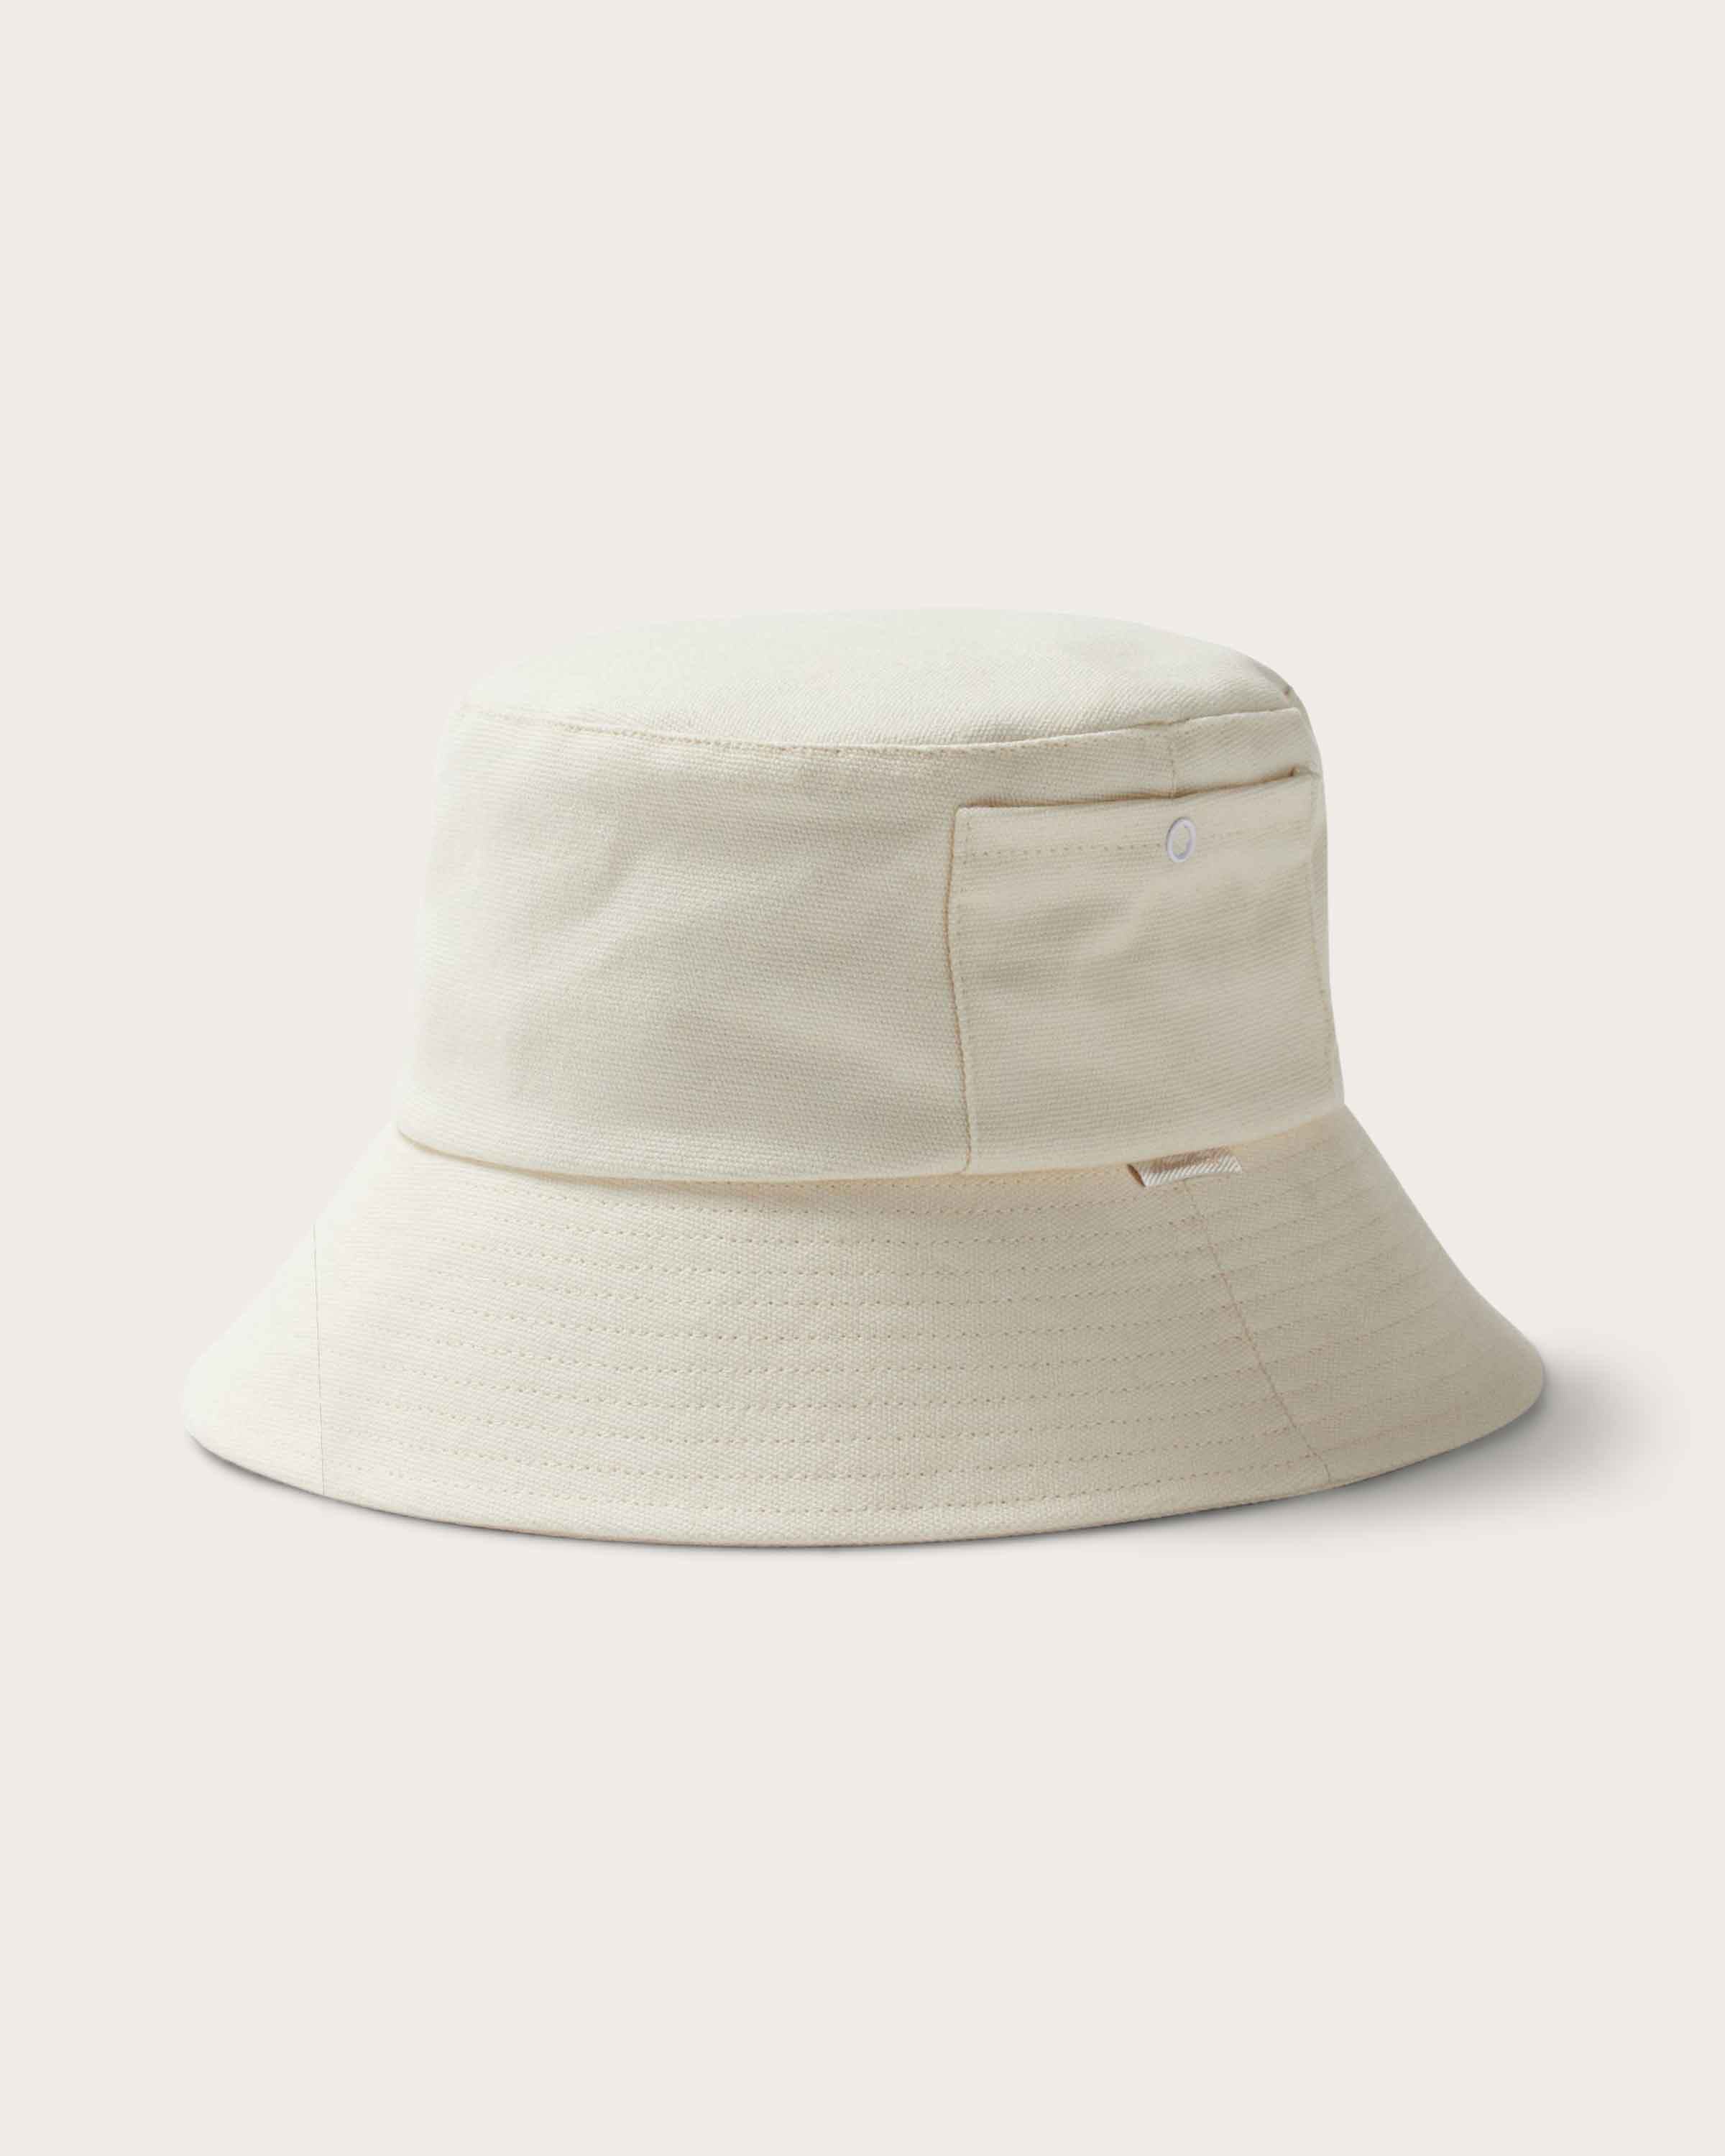 Isle Bucket Hat in Bone - undefined - Hemlock Hat Co. Buckets